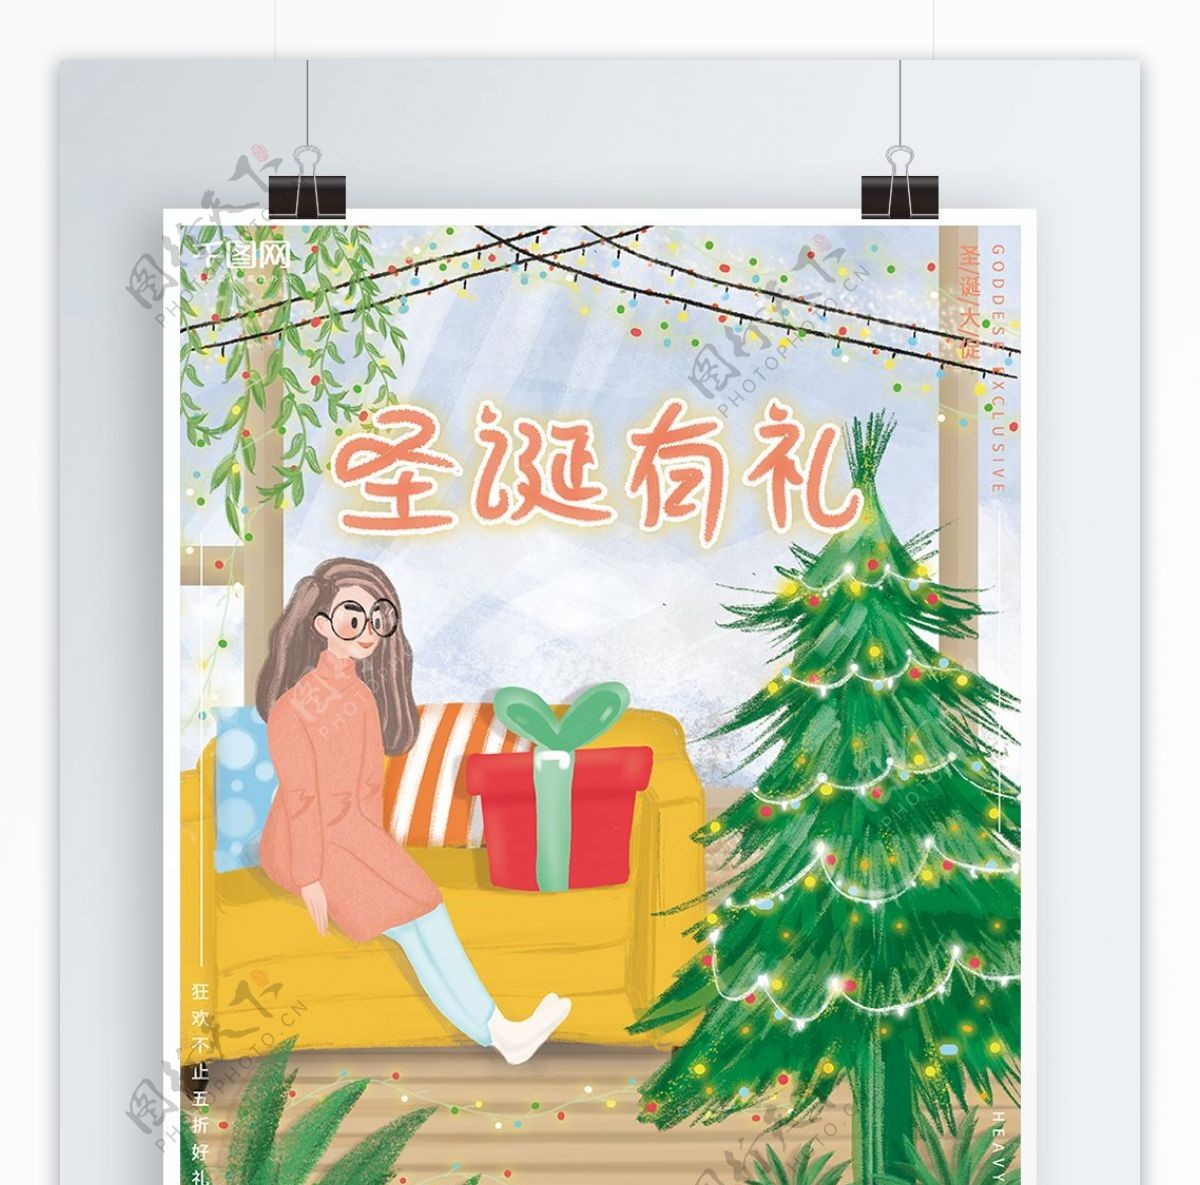 原创手绘插画浪漫温馨圣诞节节日促销海报